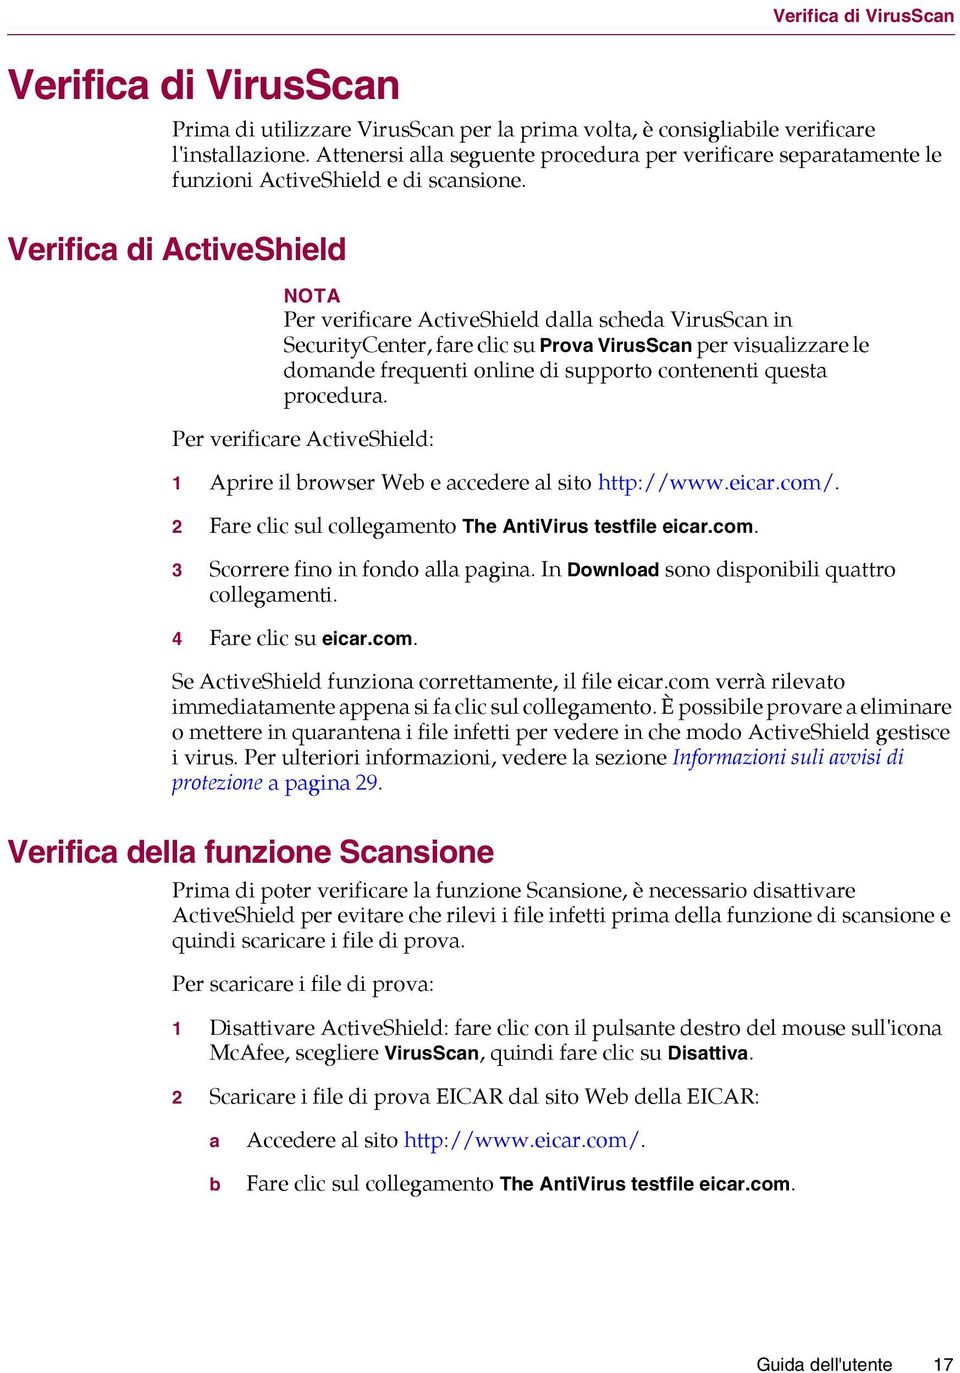 Verifica di ActiveShield NOTA Per verificare ActiveShield dalla scheda VirusScan in SecurityCenter, fare clic su Prova VirusScan per visualizzare le domande frequenti online di supporto contenenti